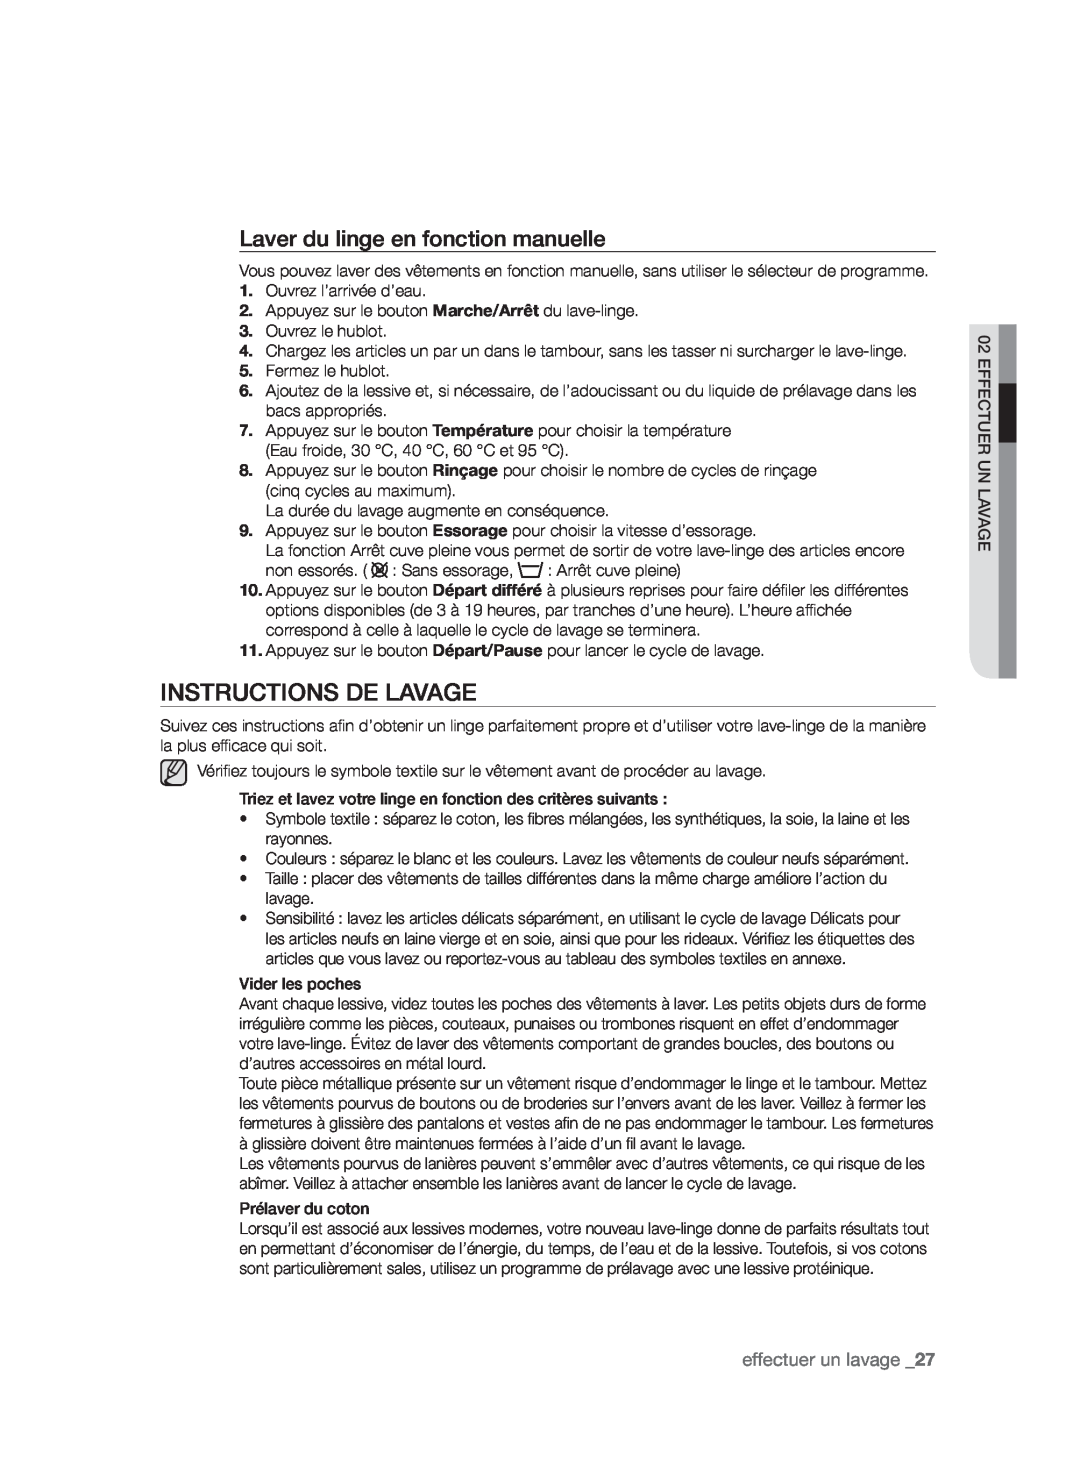 Samsung WF9902AWE/XEF, WF9904AWE/XEF manual Instructions De Lavage, Laver du linge en fonction manuelle, effectuer un lavage 